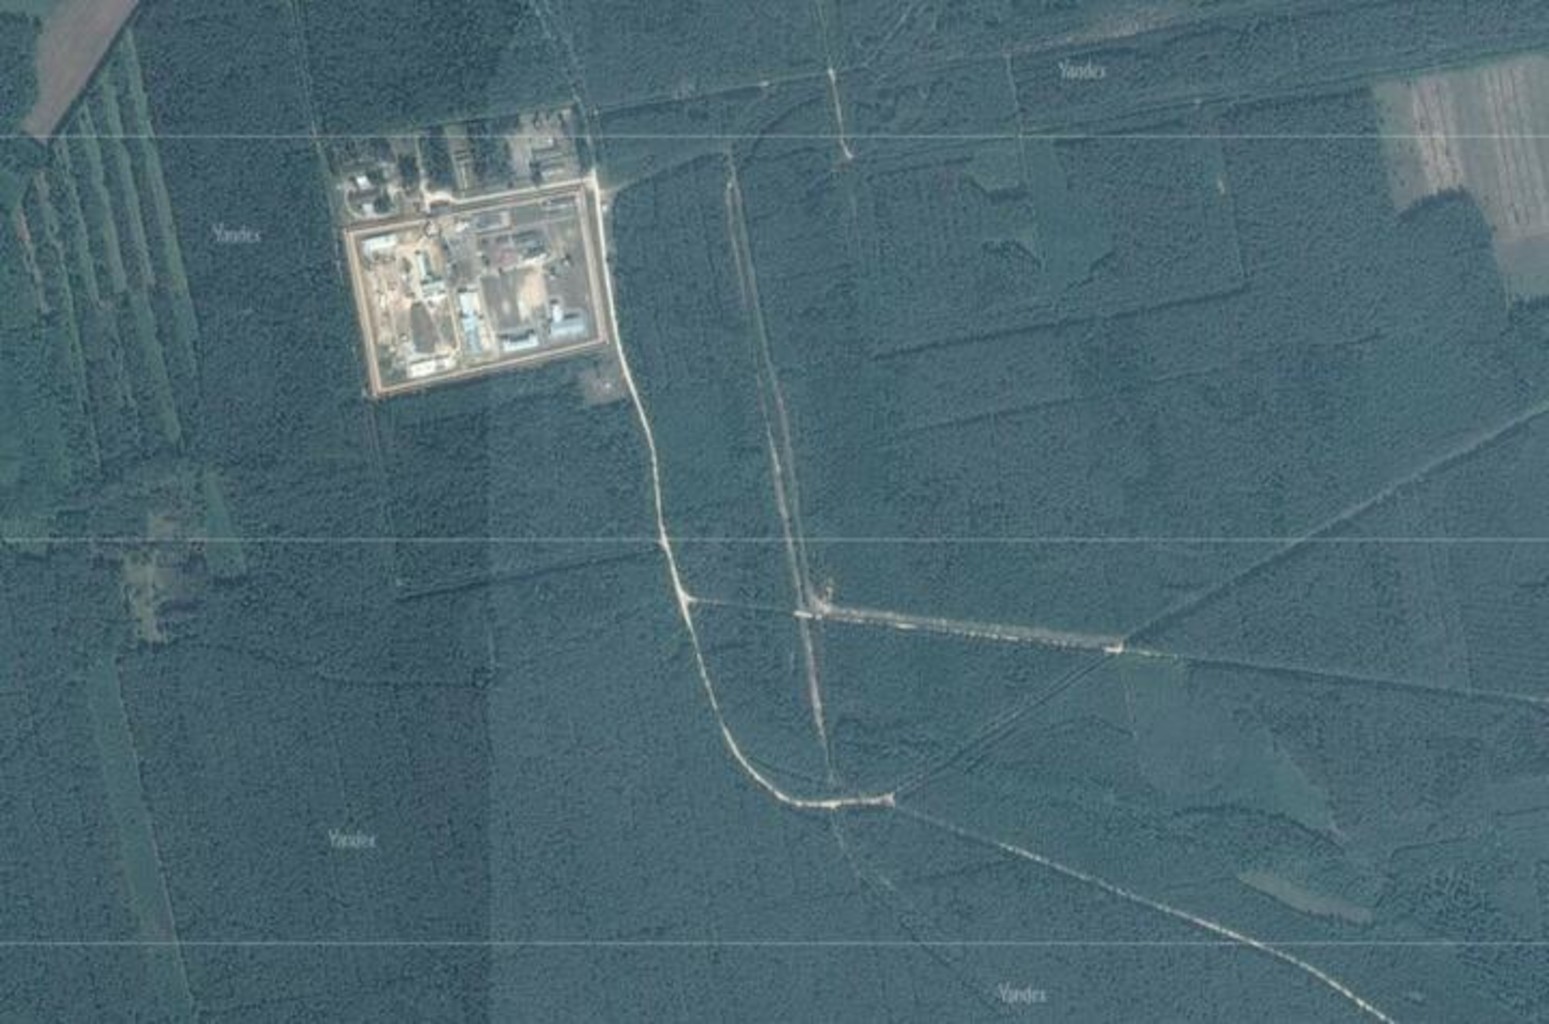 Спутниковый снимок ИК-22. Авария произошла, скорее всего, чуть правее закругления дороги в центральной части кадра. Снимок: Яндекс.Карты